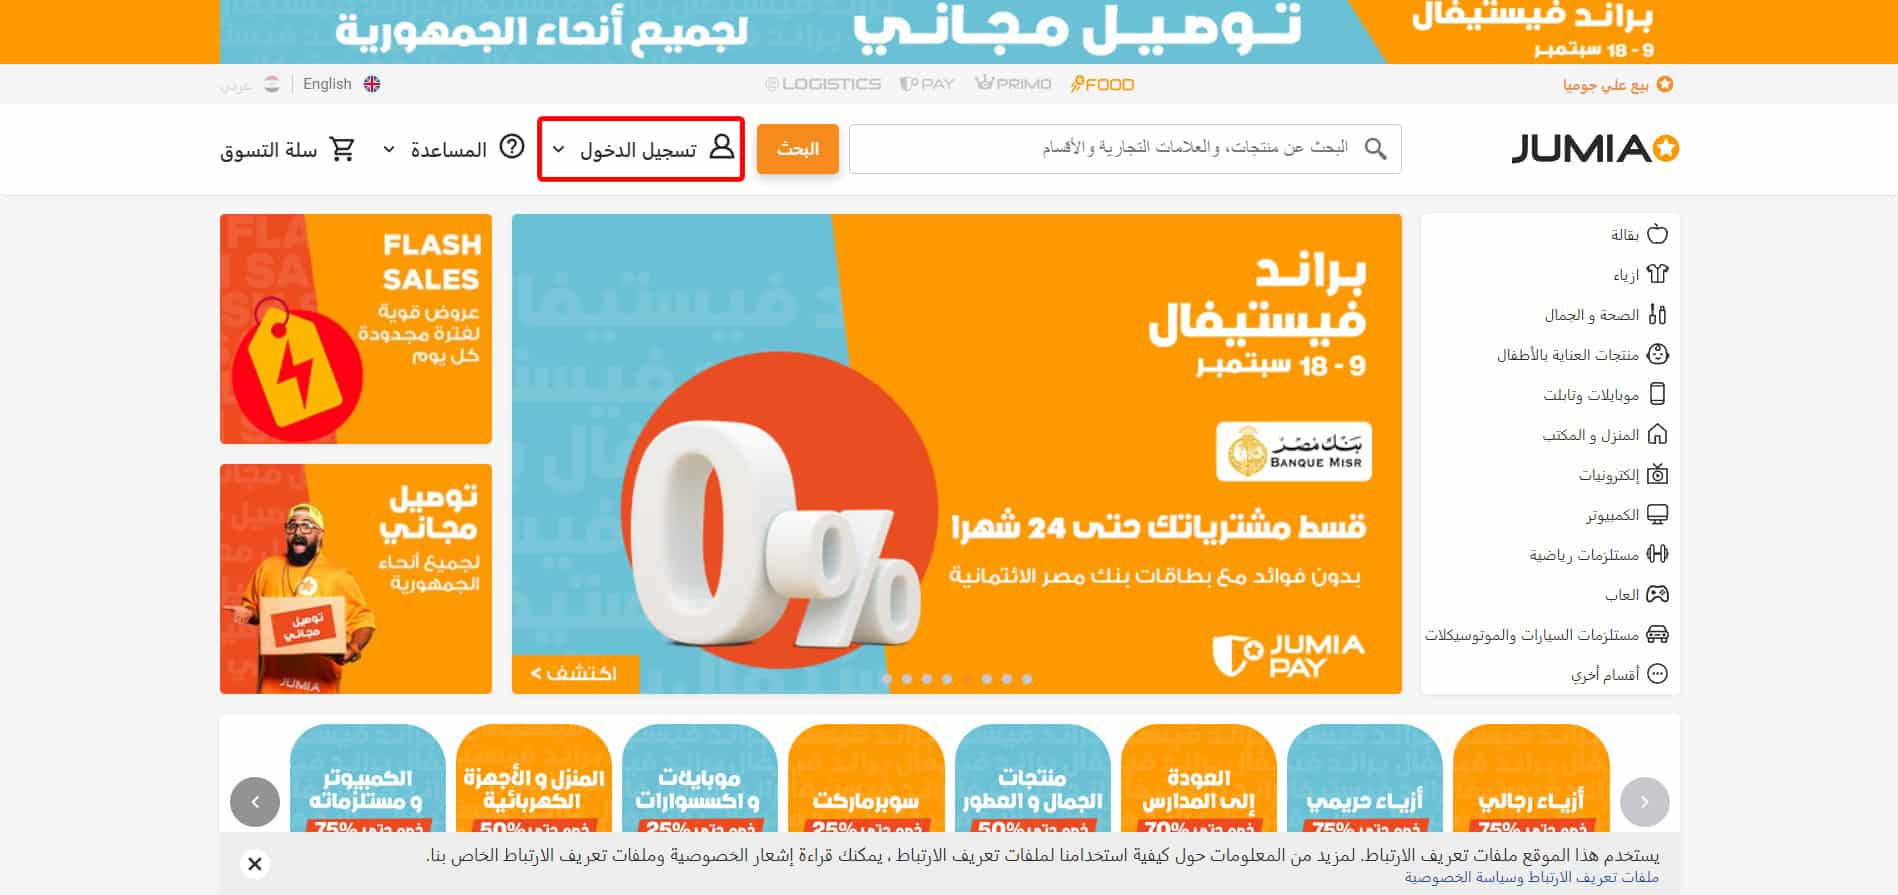 الصفحة الرئيسية لمتجر جوميا الإلكتروني مع زر تسجيل الدخول على المنصة